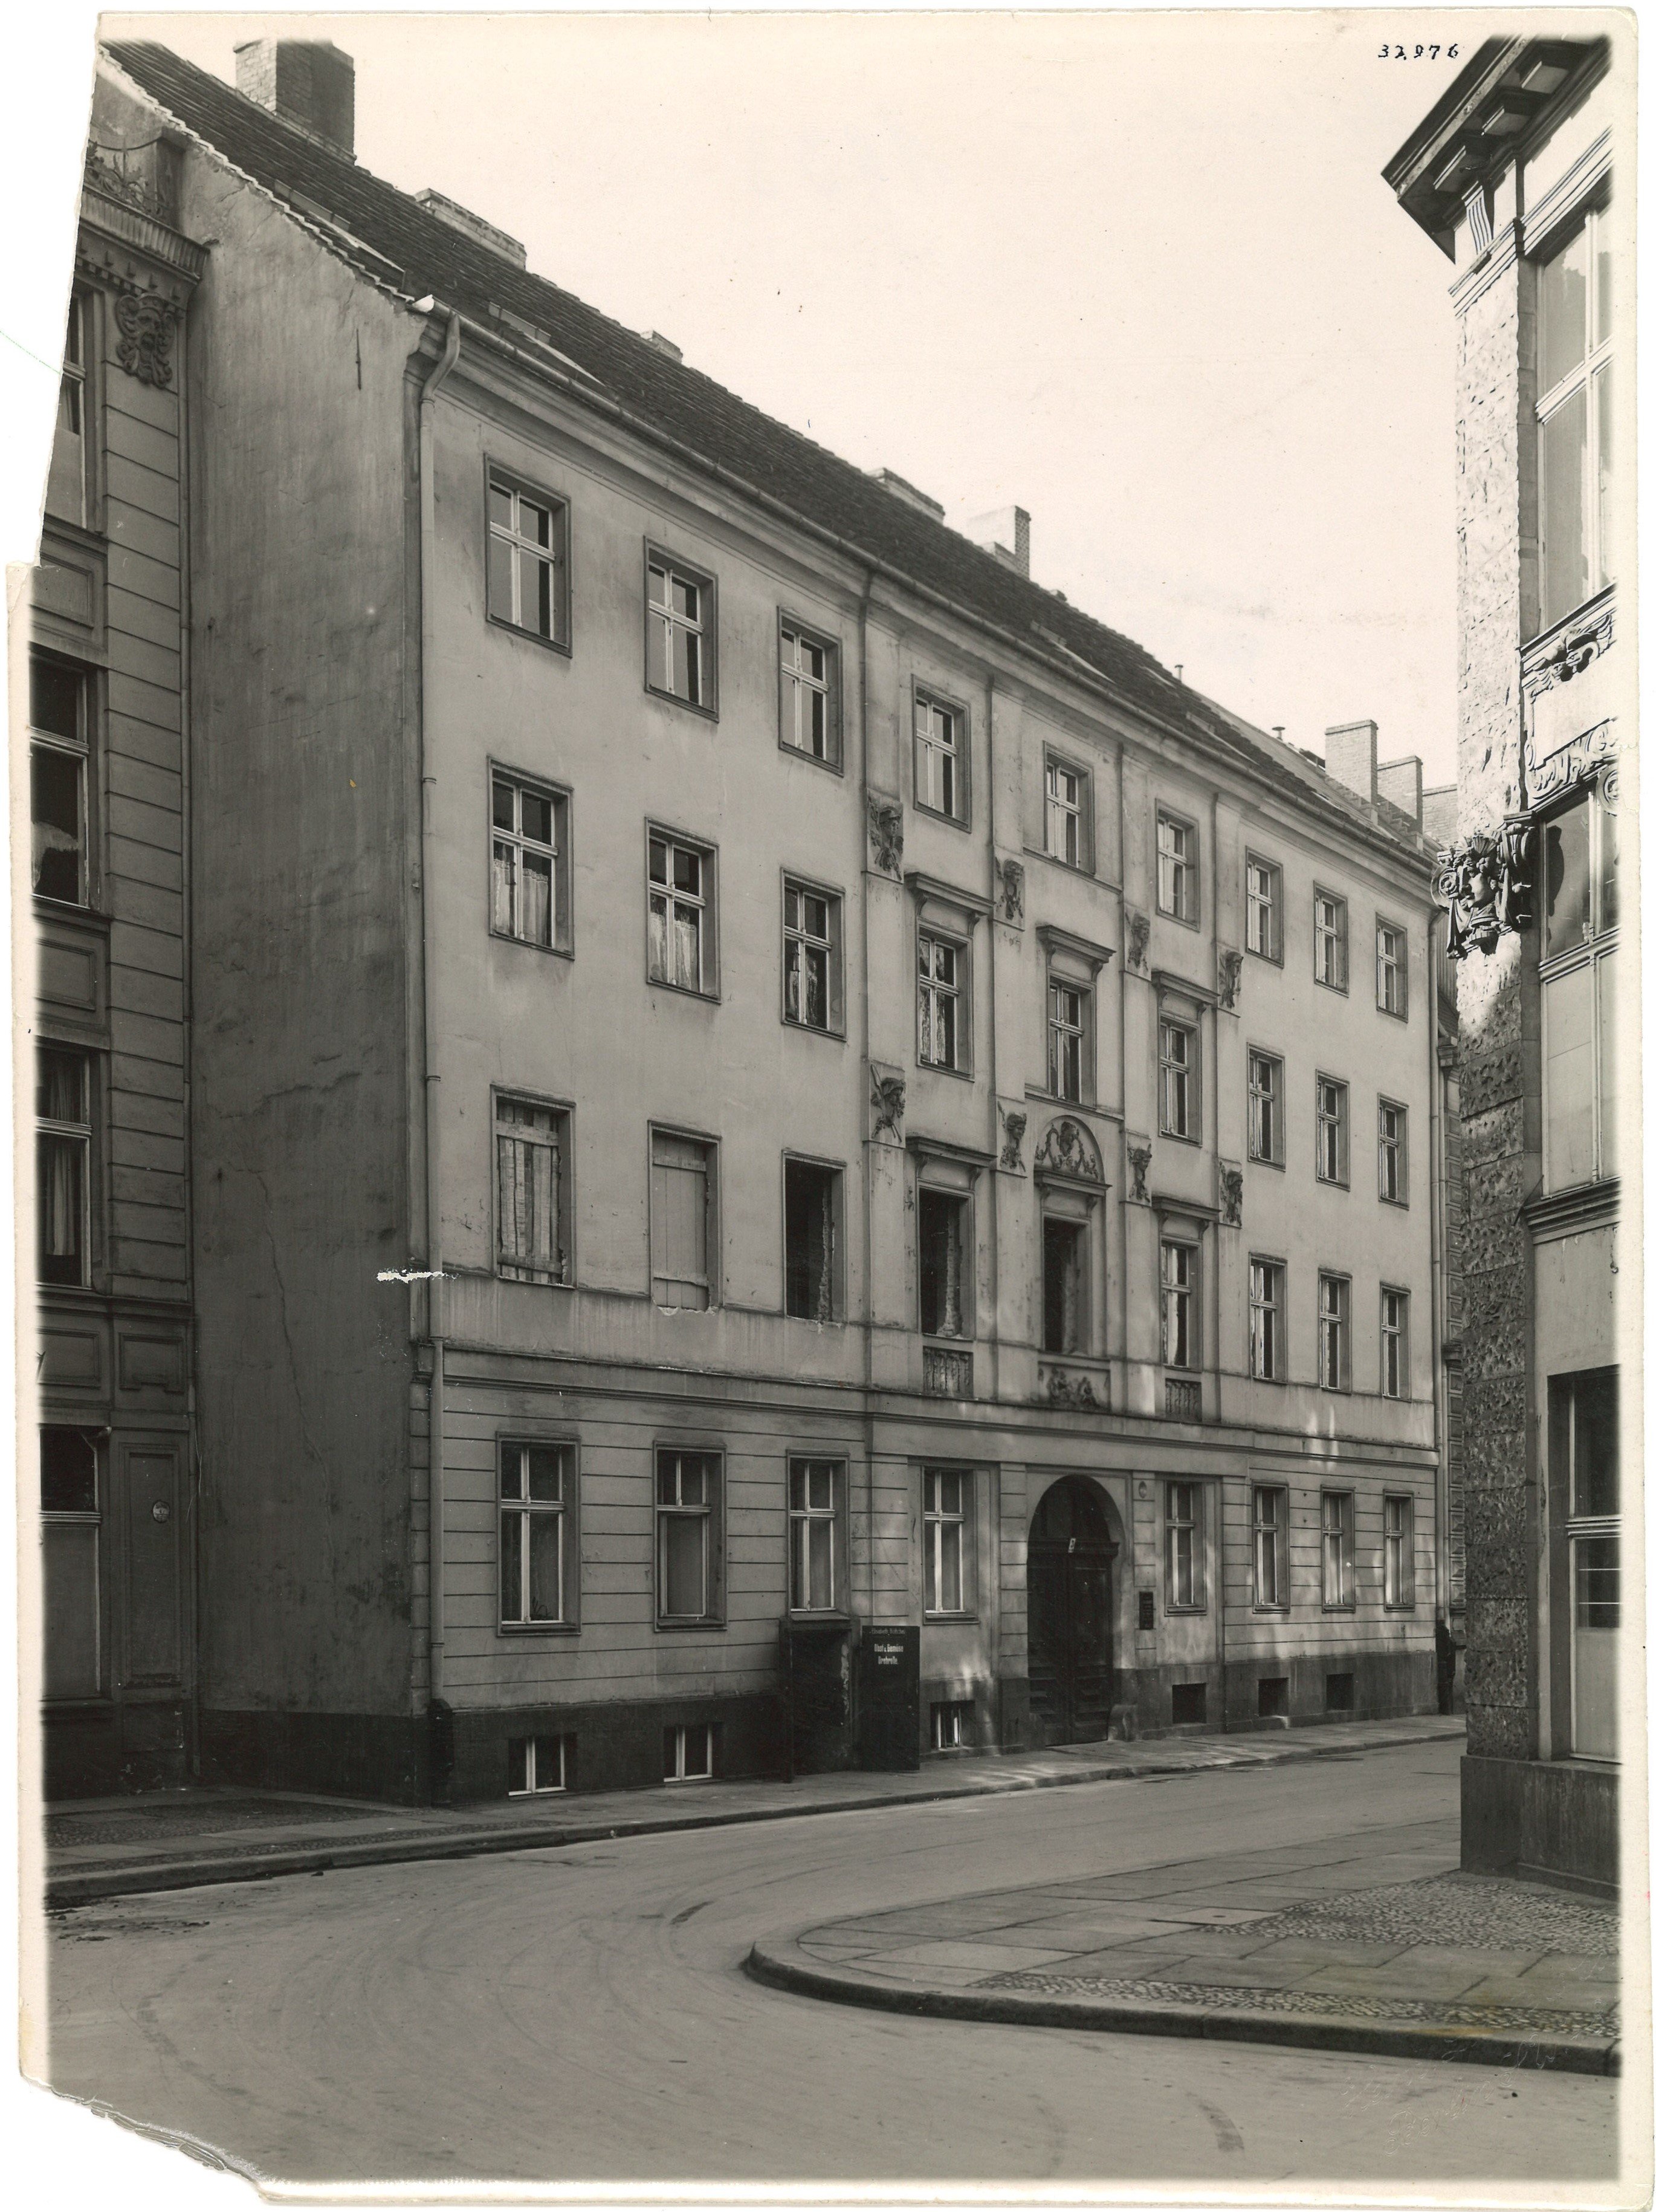 Berlin-Mitte: Adlerstraße 5 (Landesgeschichtliche Vereinigung für die Mark Brandenburg e.V., Archiv CC BY)